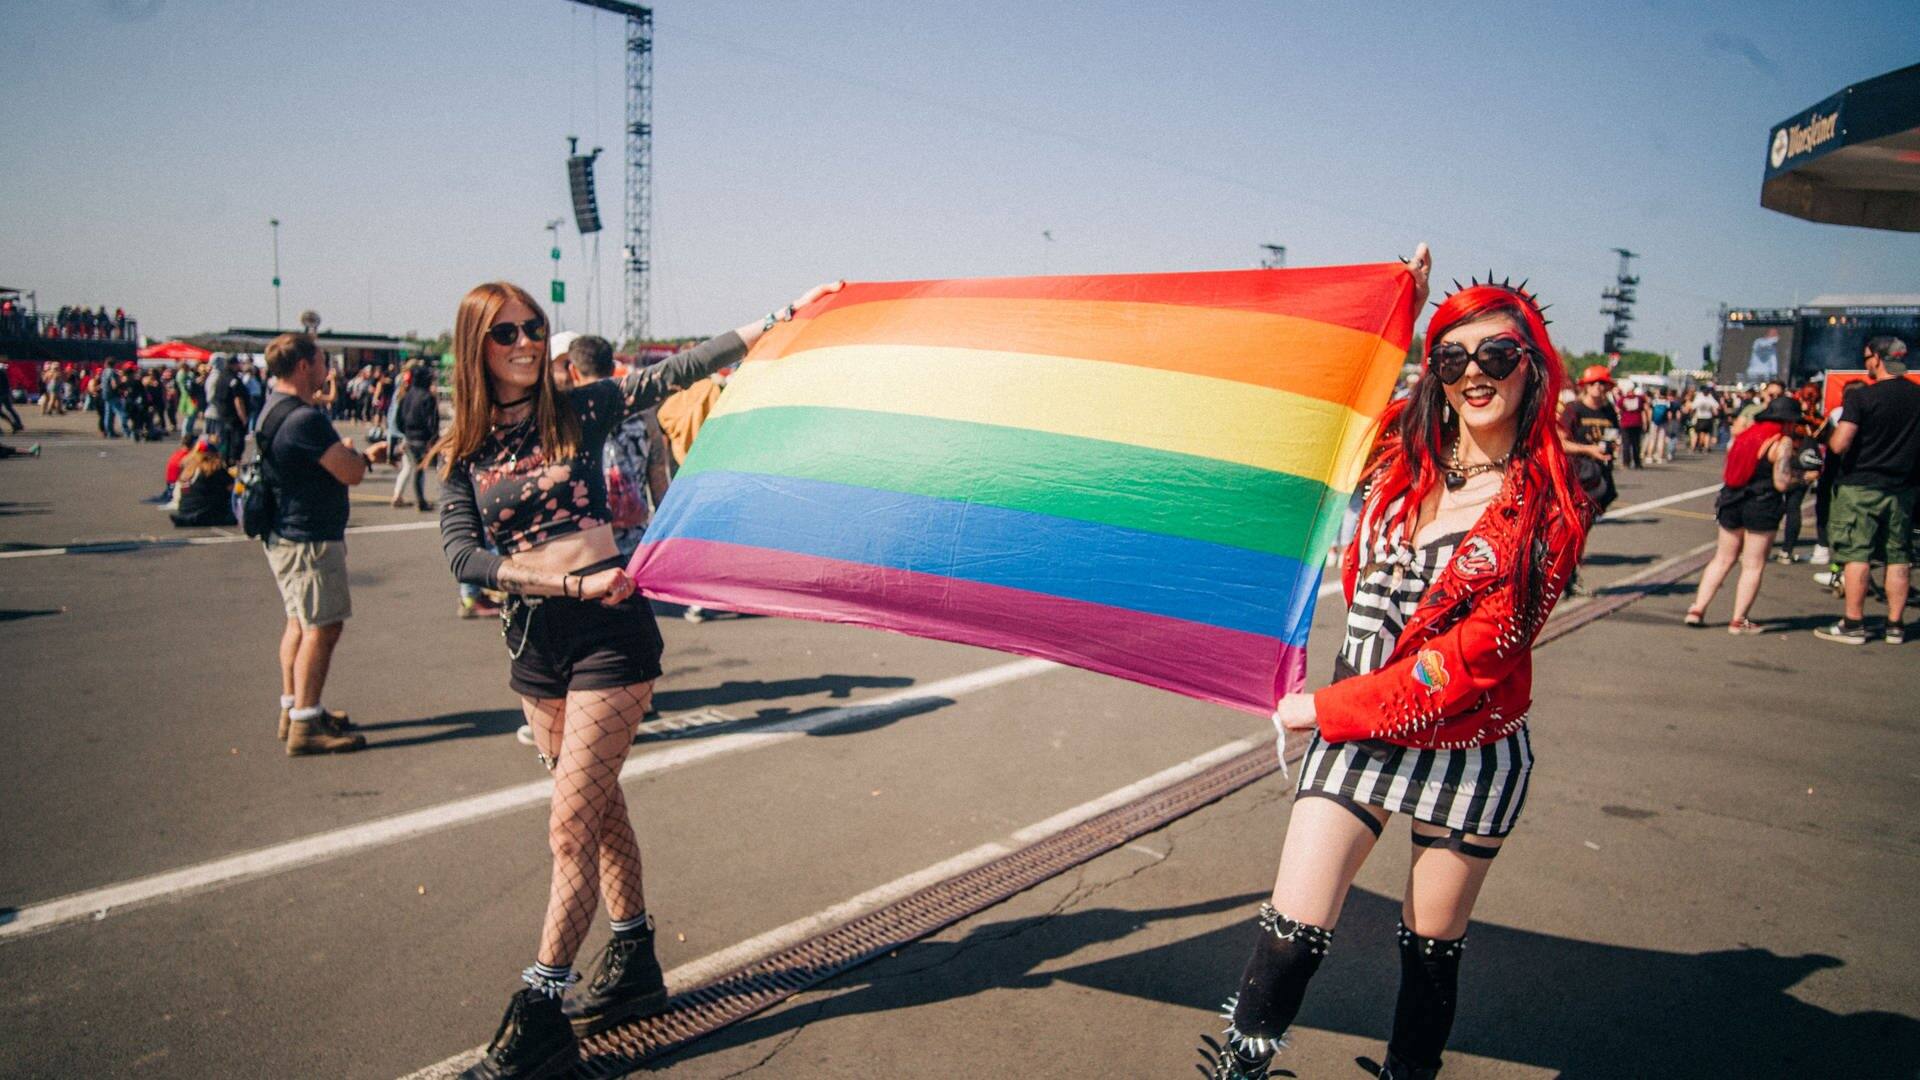 Zwei junge Frauen laufen auf dem Gelände von Rock am Ring herum und tragen zwischen sich eine Regenbogenflagge (Foto: SWR3, SWR3 / Niko Neithardt)